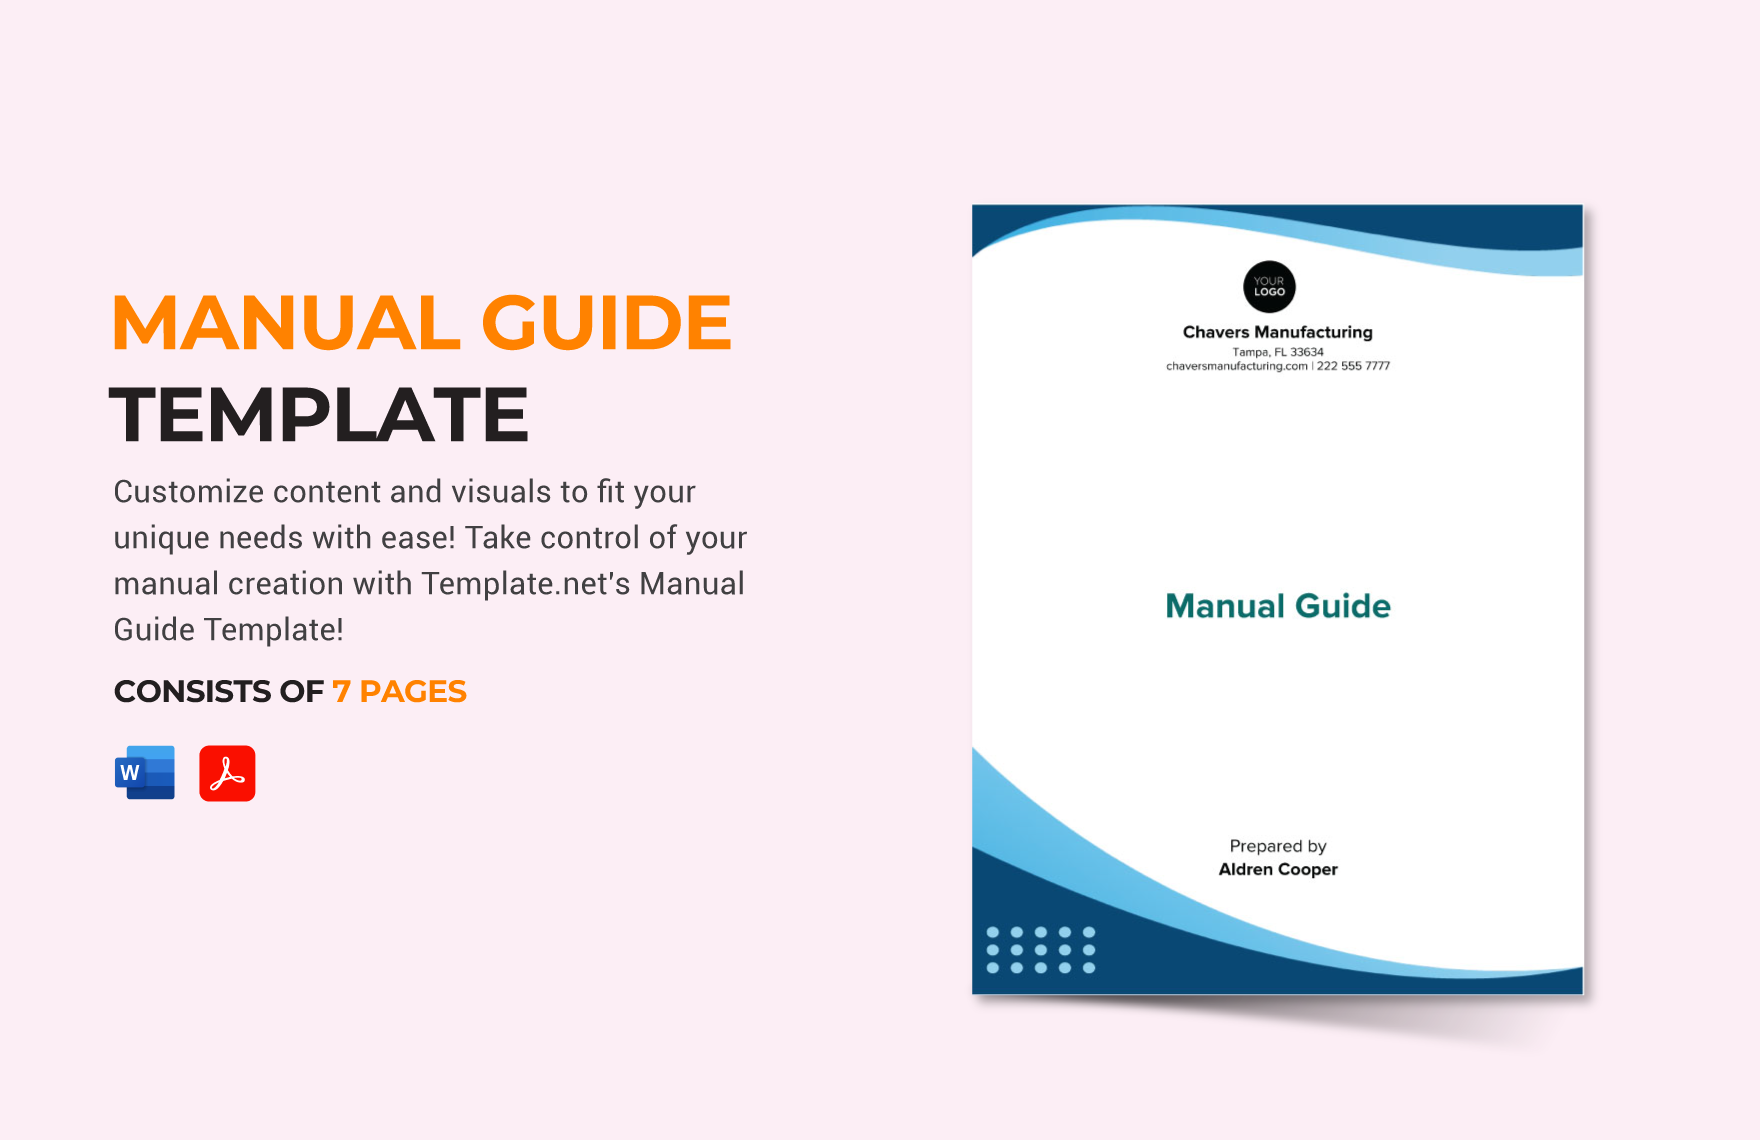 Manual Guide Template